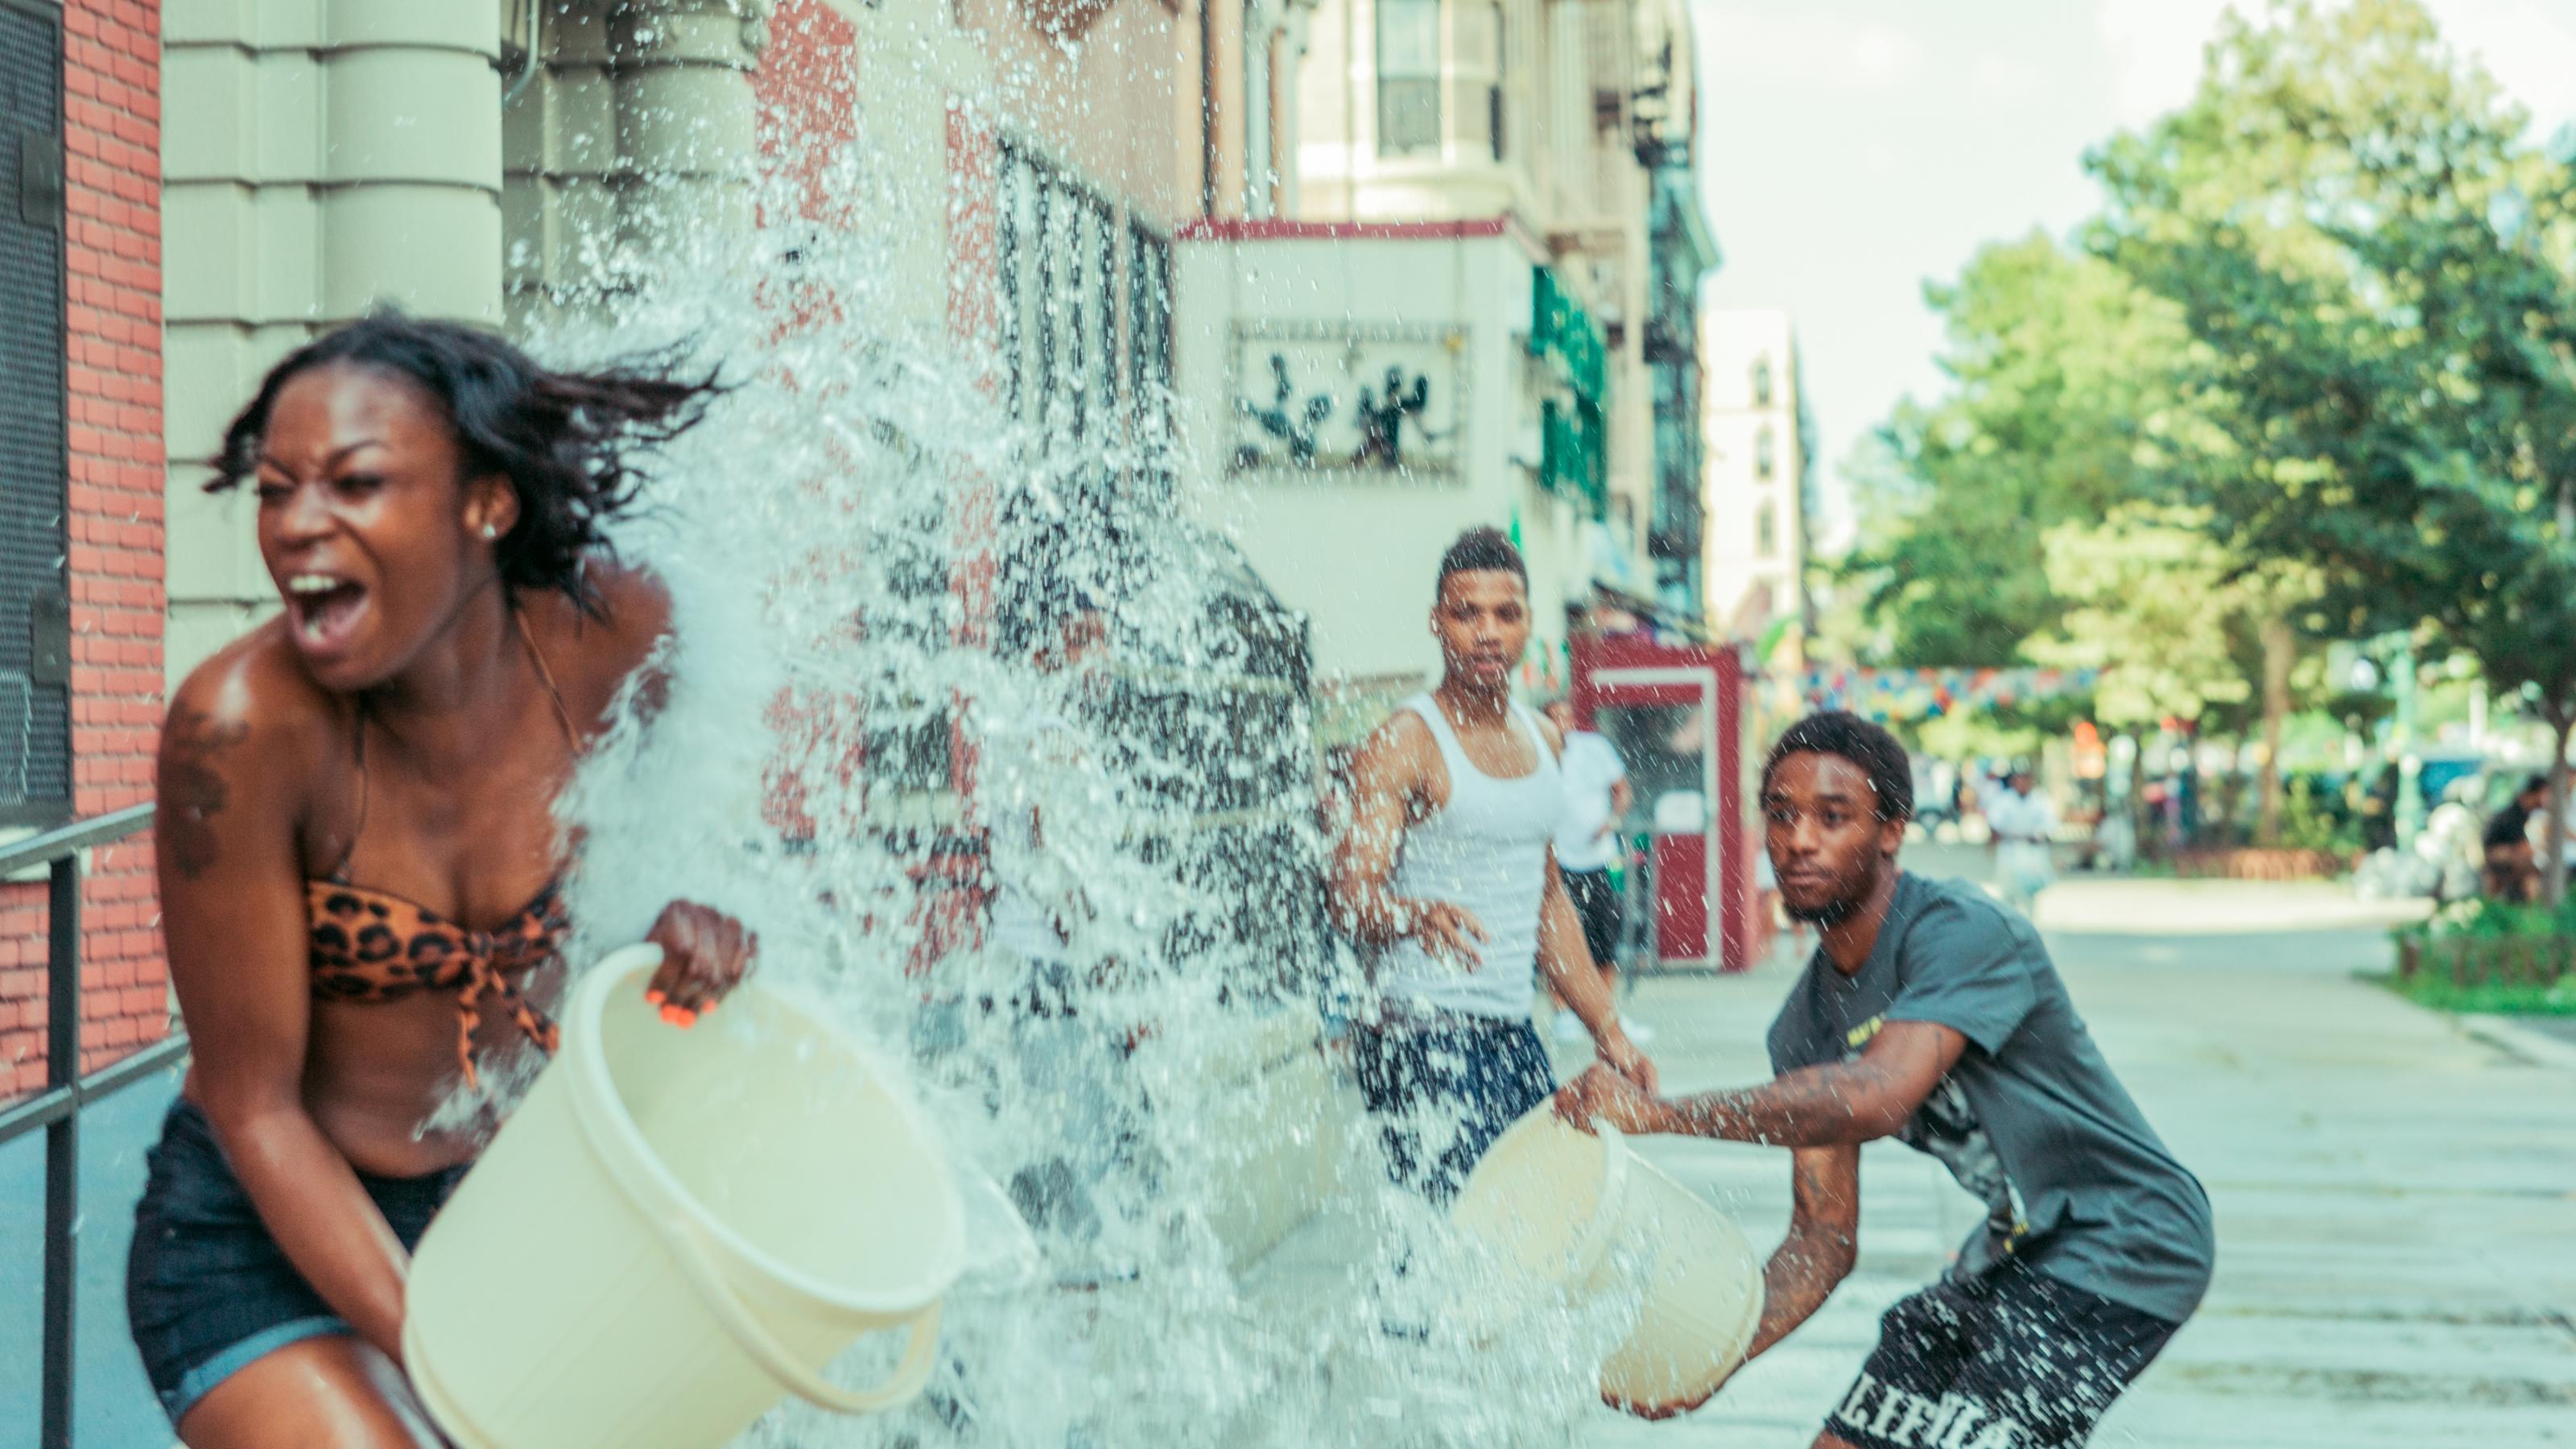 Eine Jugendgruppe bespritzt sich mit Wasser